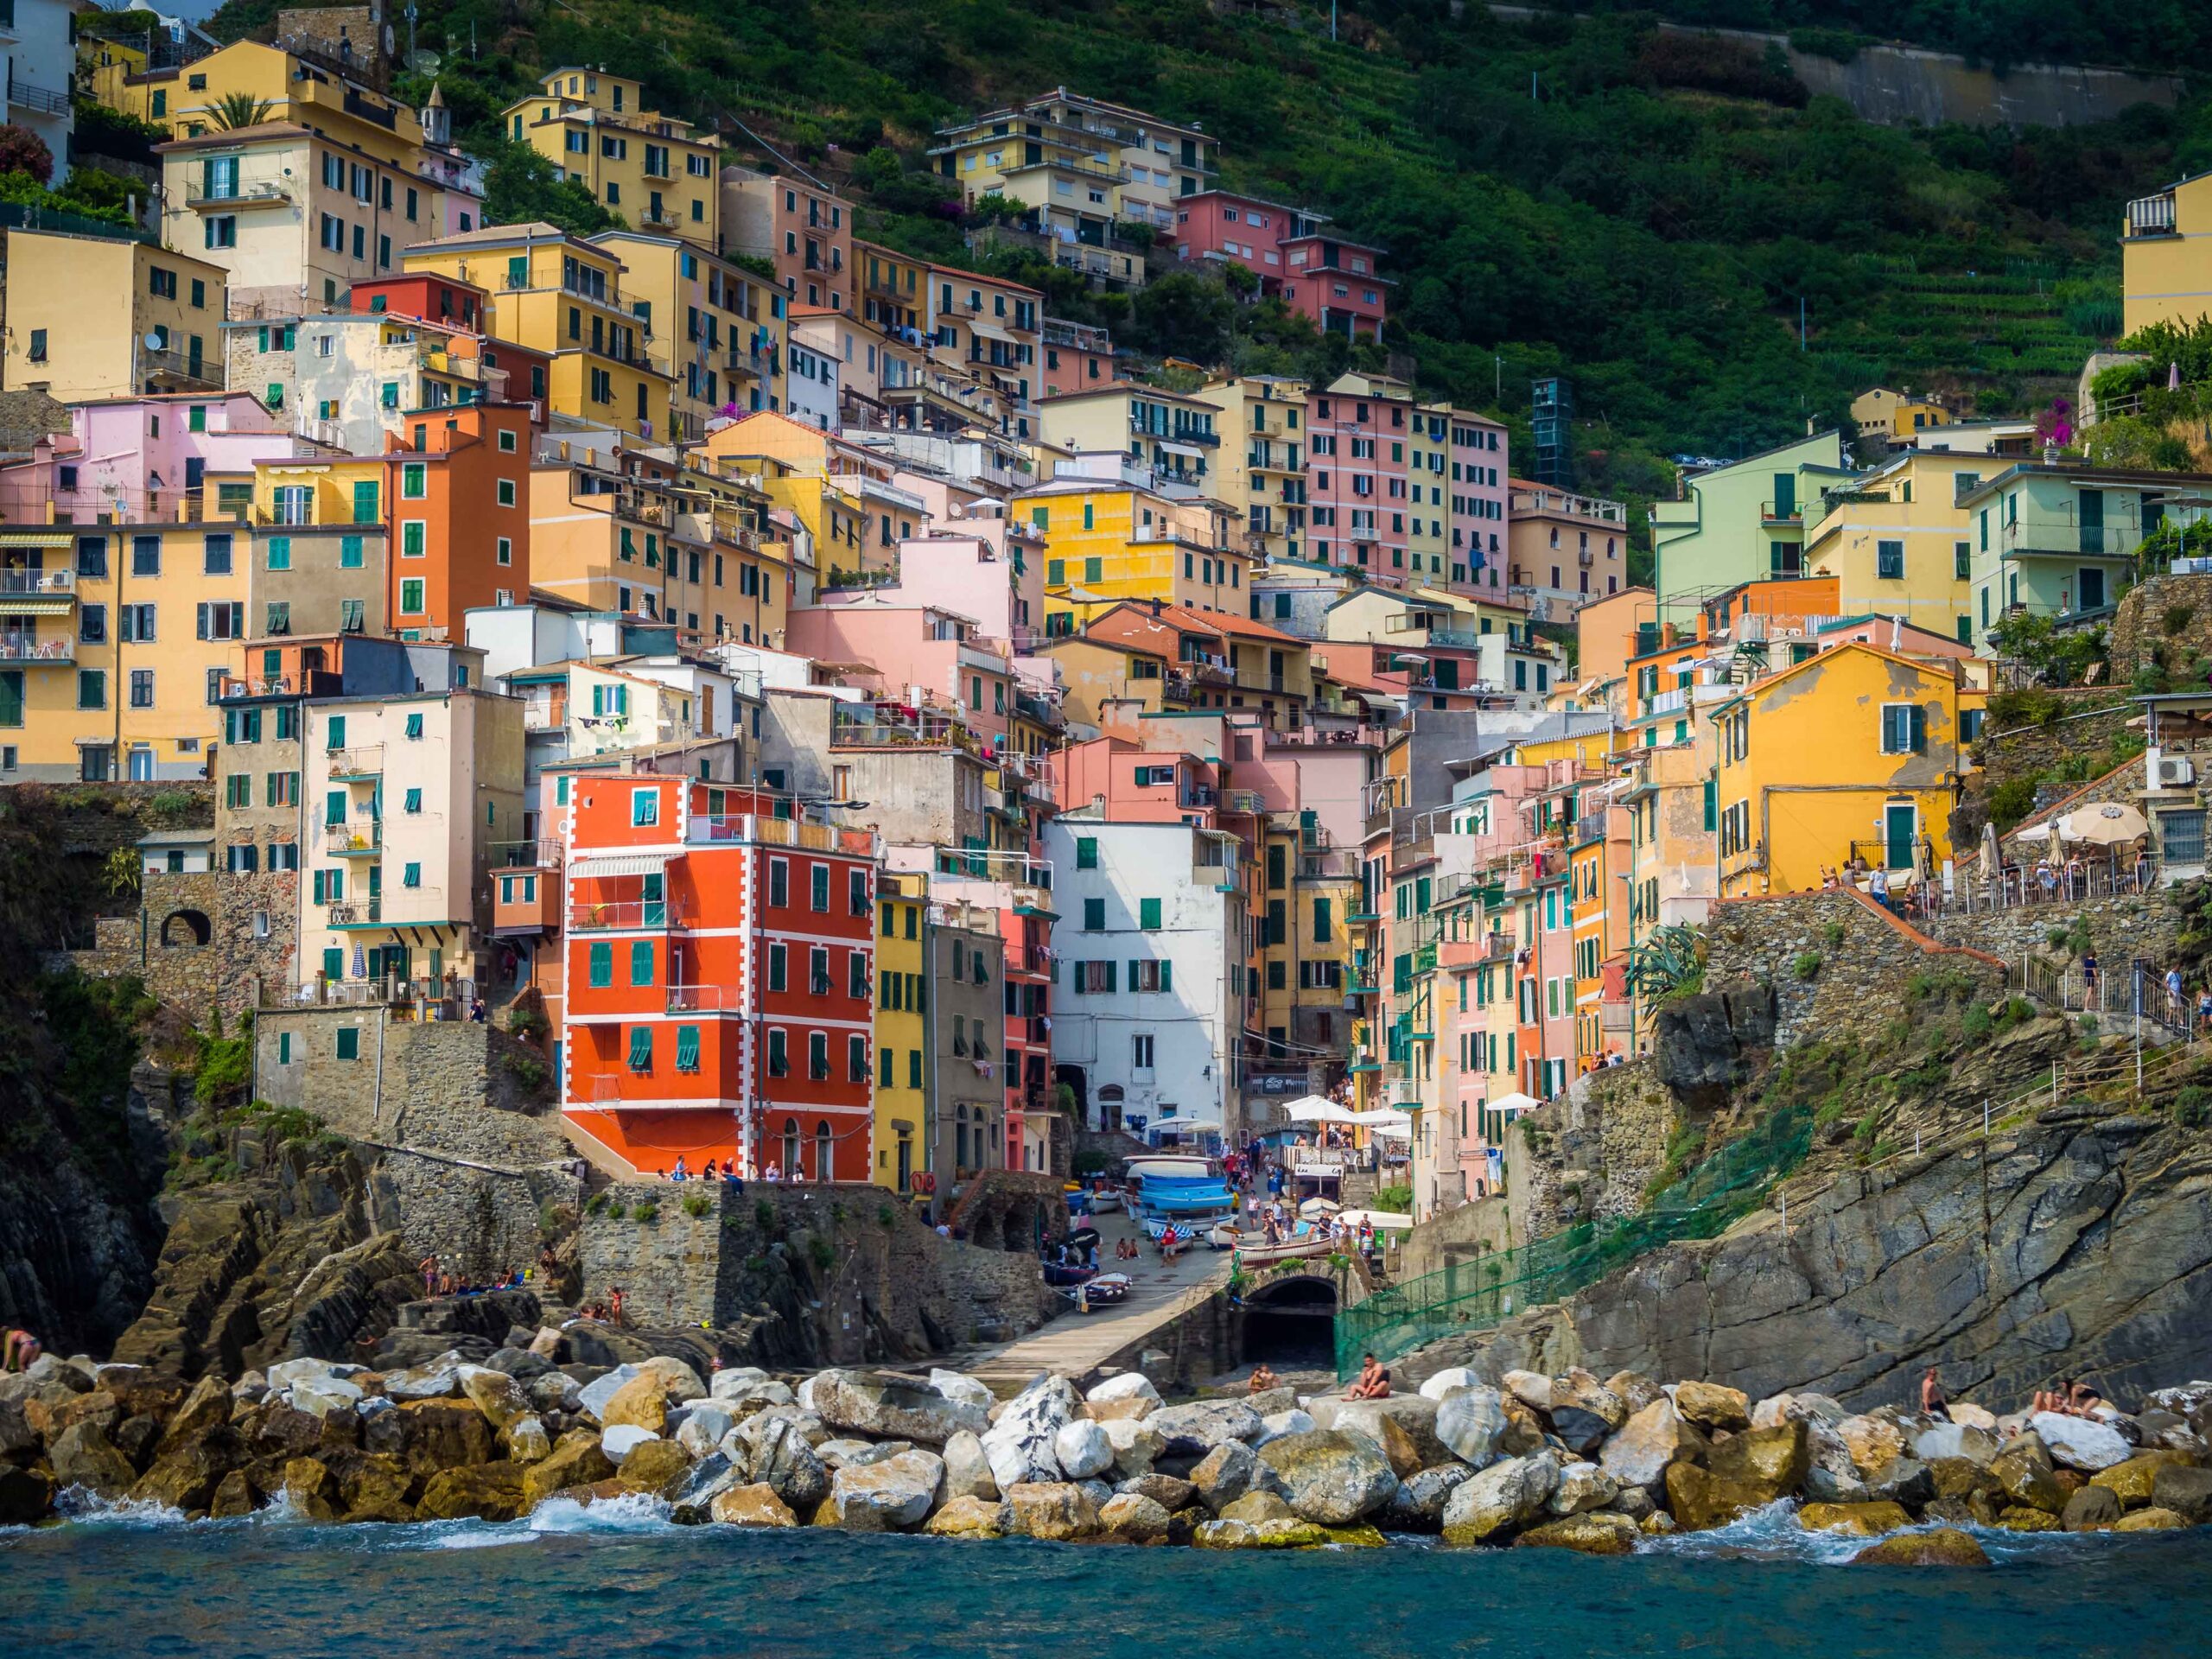 หมู่บ้านทั้ง 5 แห่งแคว้นลีกูเรีย - Cinque Terre 